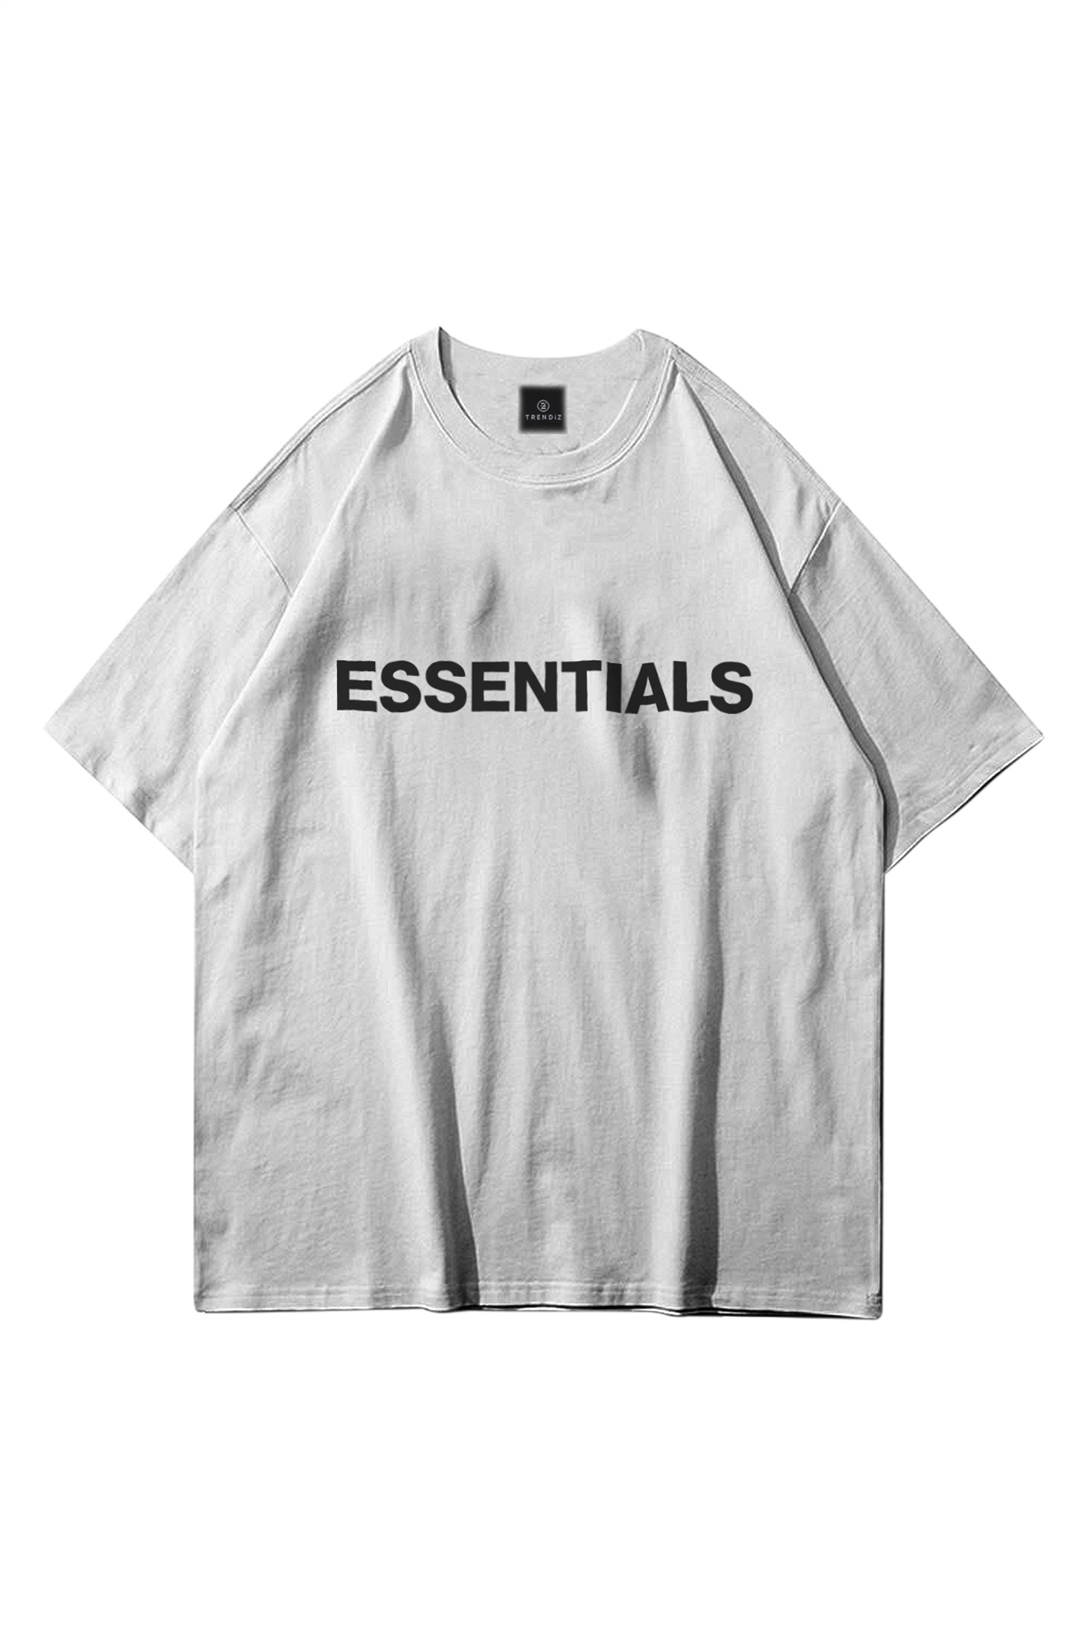 Trendiz Unisex Essentials Beyaz Tshirt